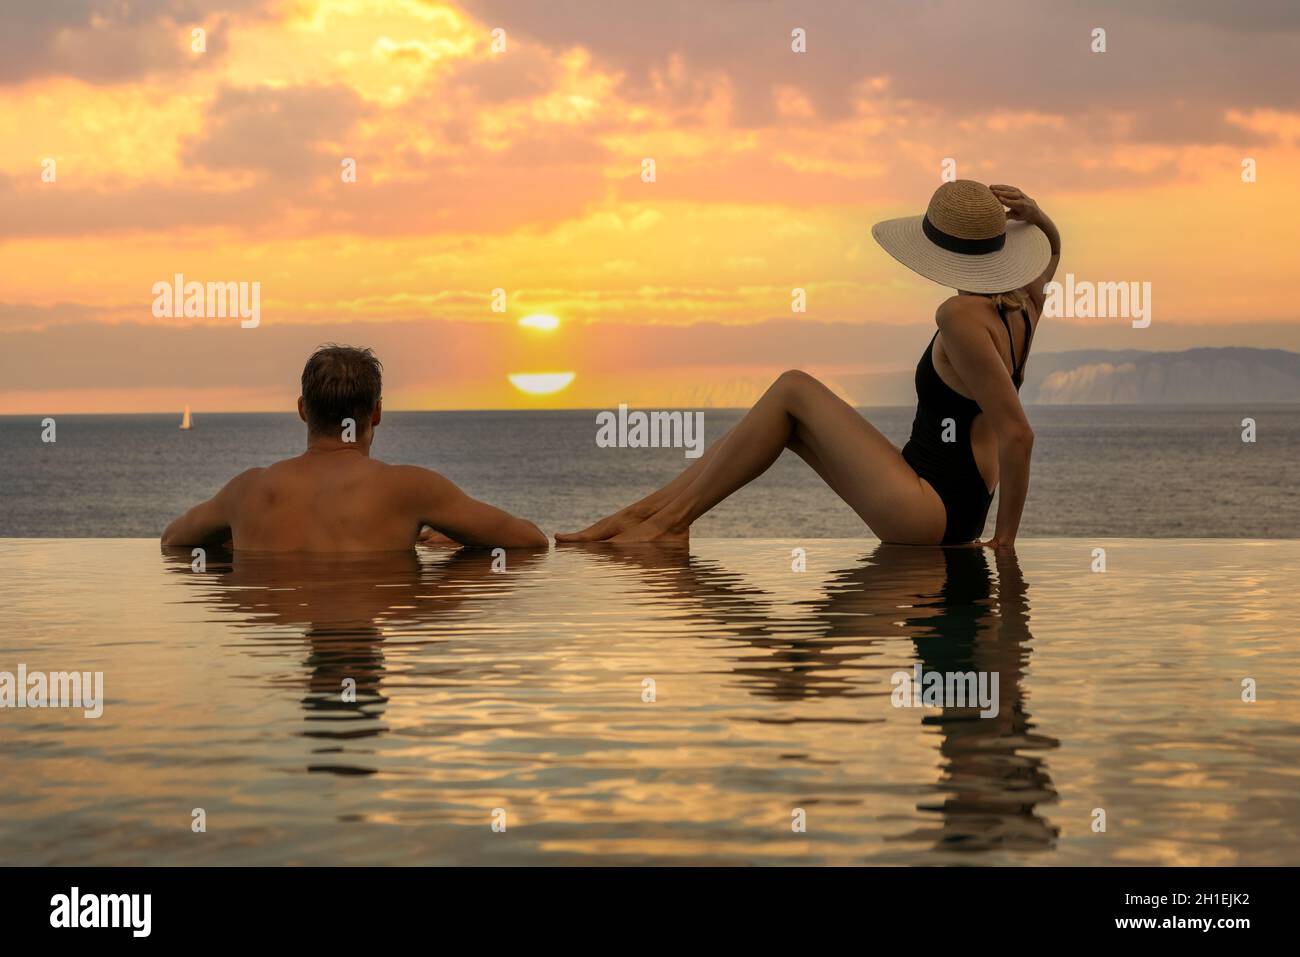 vacanza in luna di miele - la coppia gode di un romantico tramonto nella piscina a sfioro nel resort di lusso Foto Stock